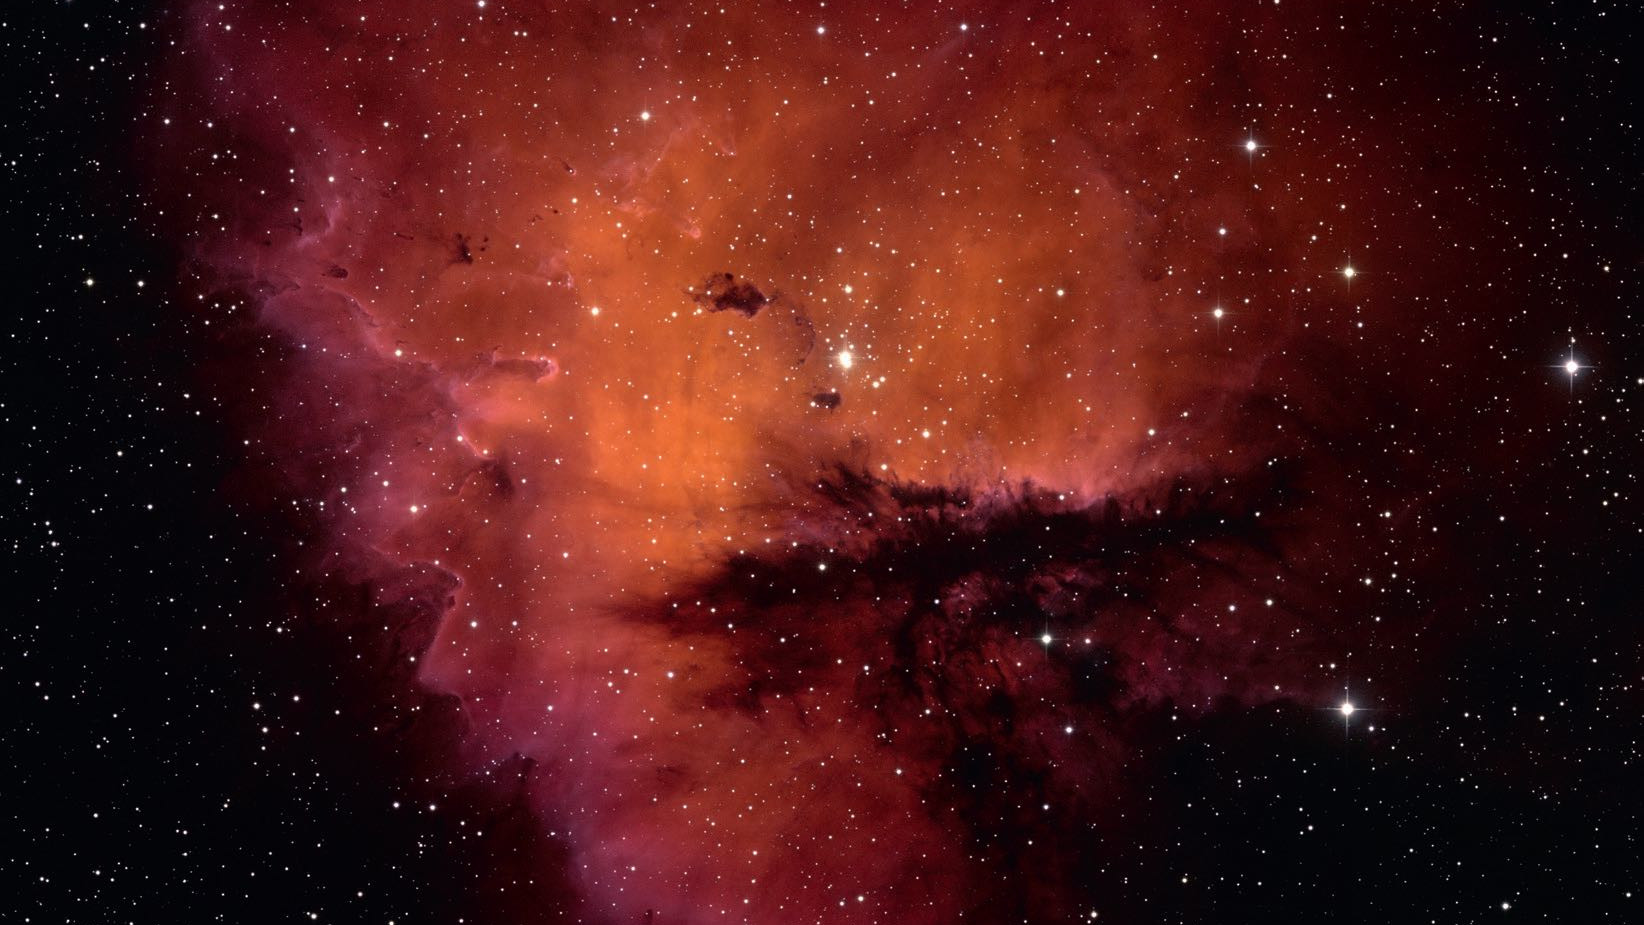 Forma nebuloase NGC 281 amintește de personajul Pacman nu doar din punct de vedere fotografic, ci și vizual. NSF/AURA/WIYN/T. Rector (University of Alaska)